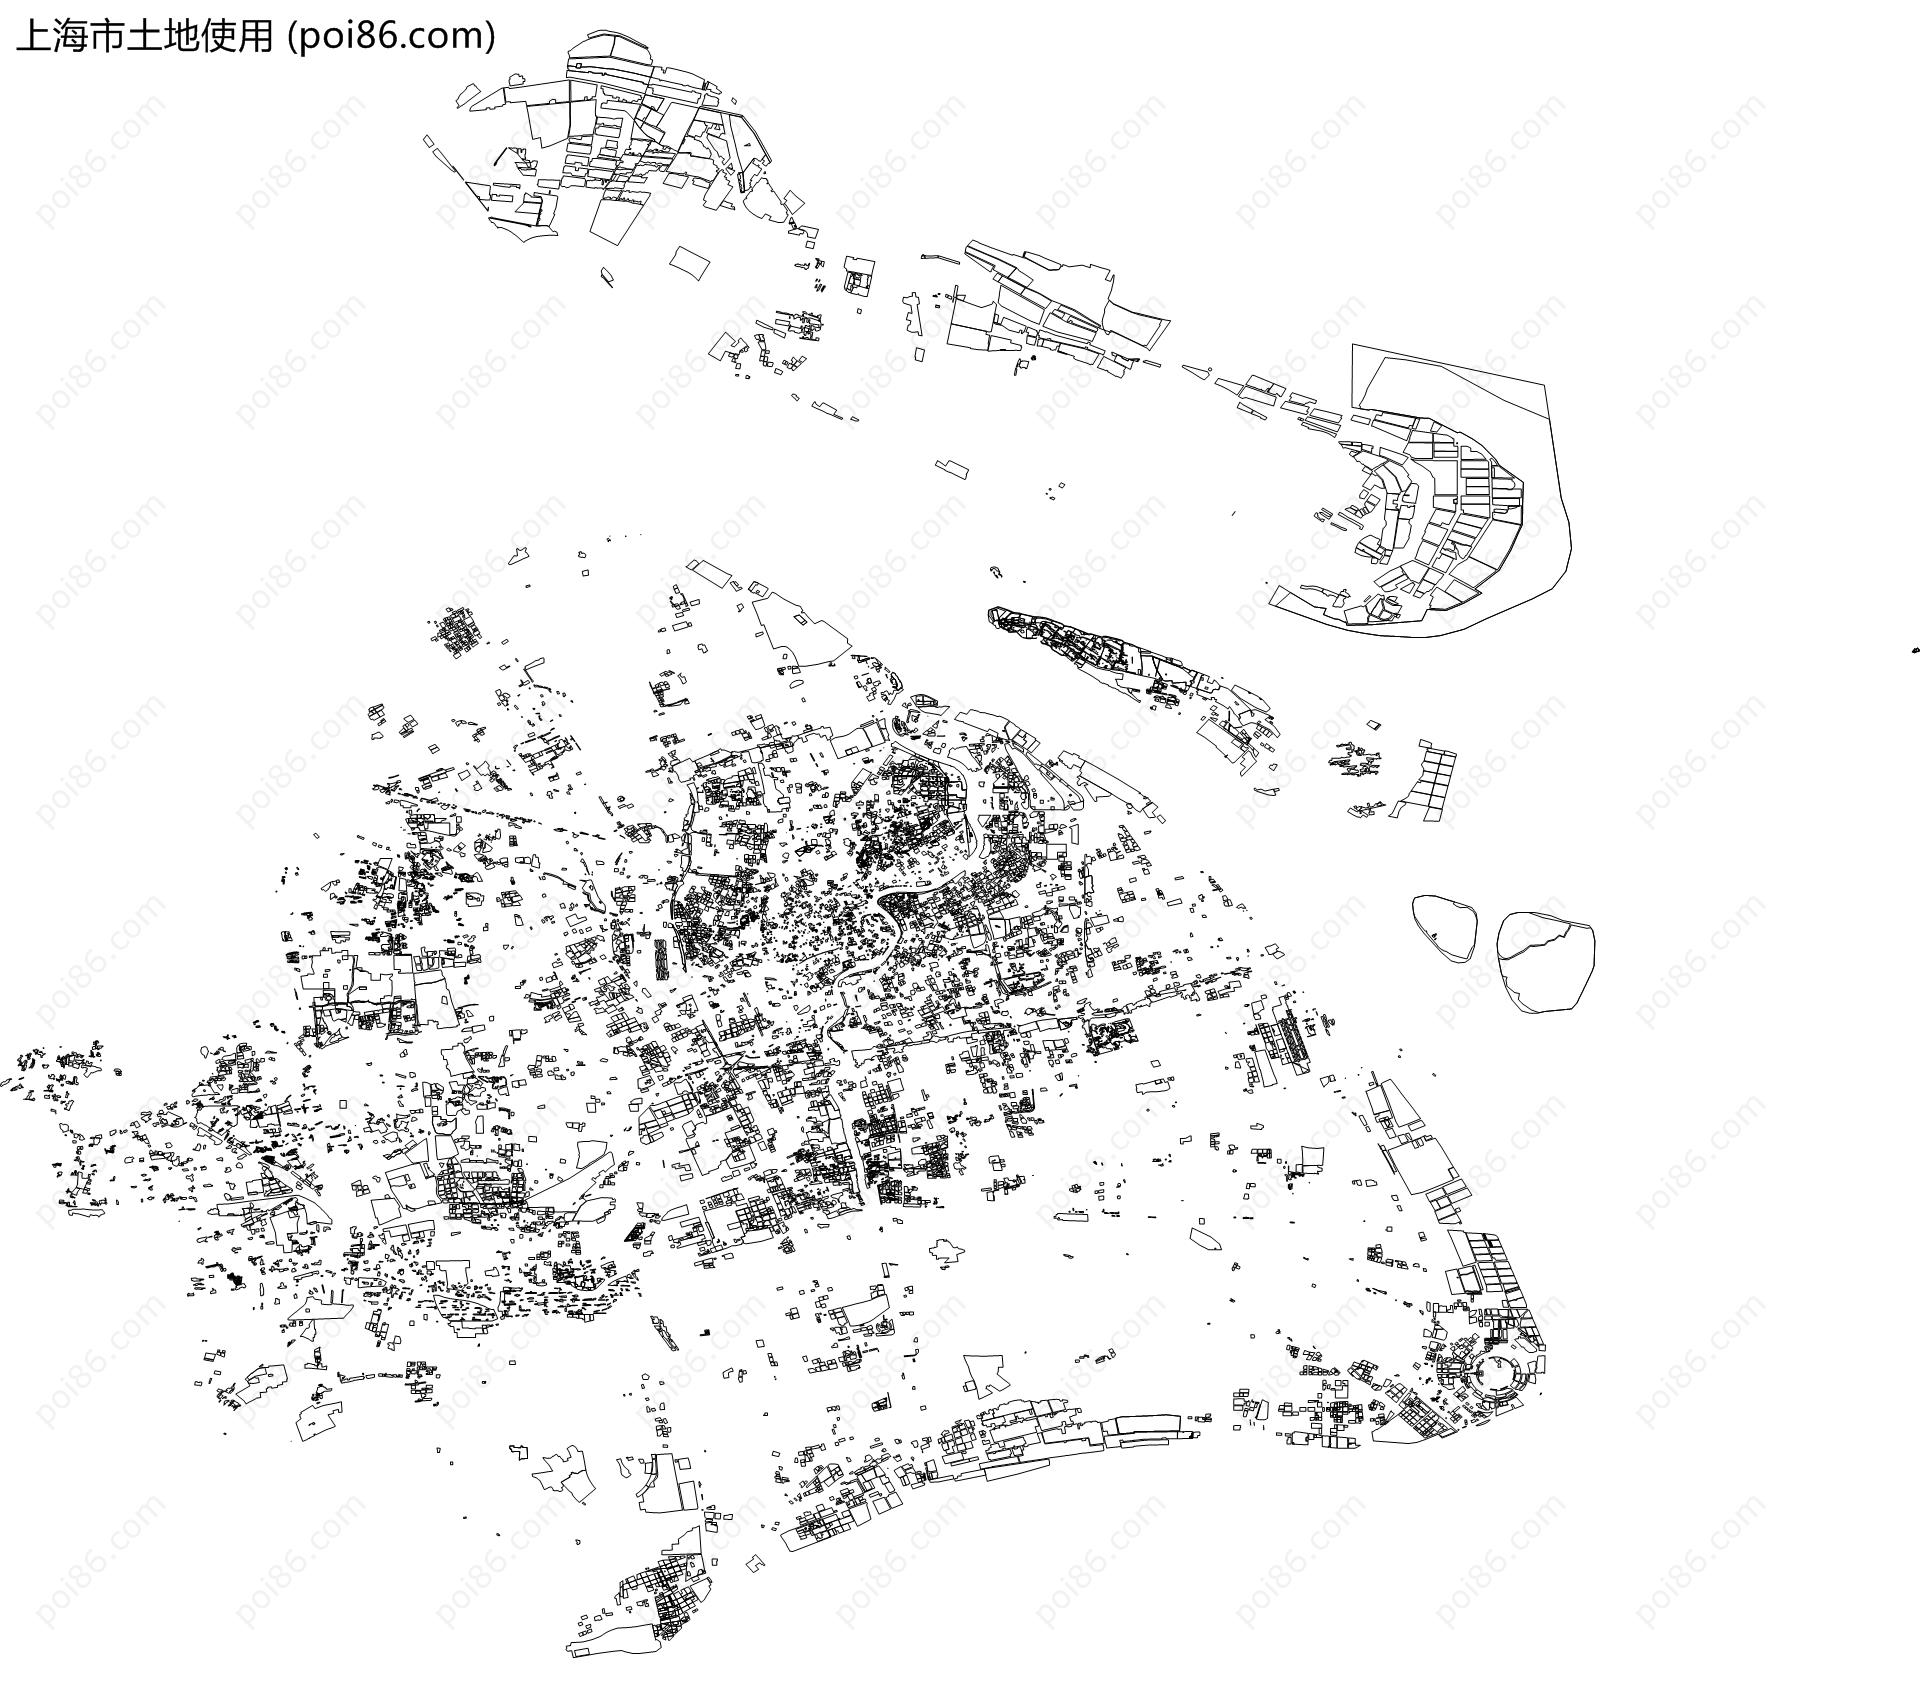 上海市土地使用地图